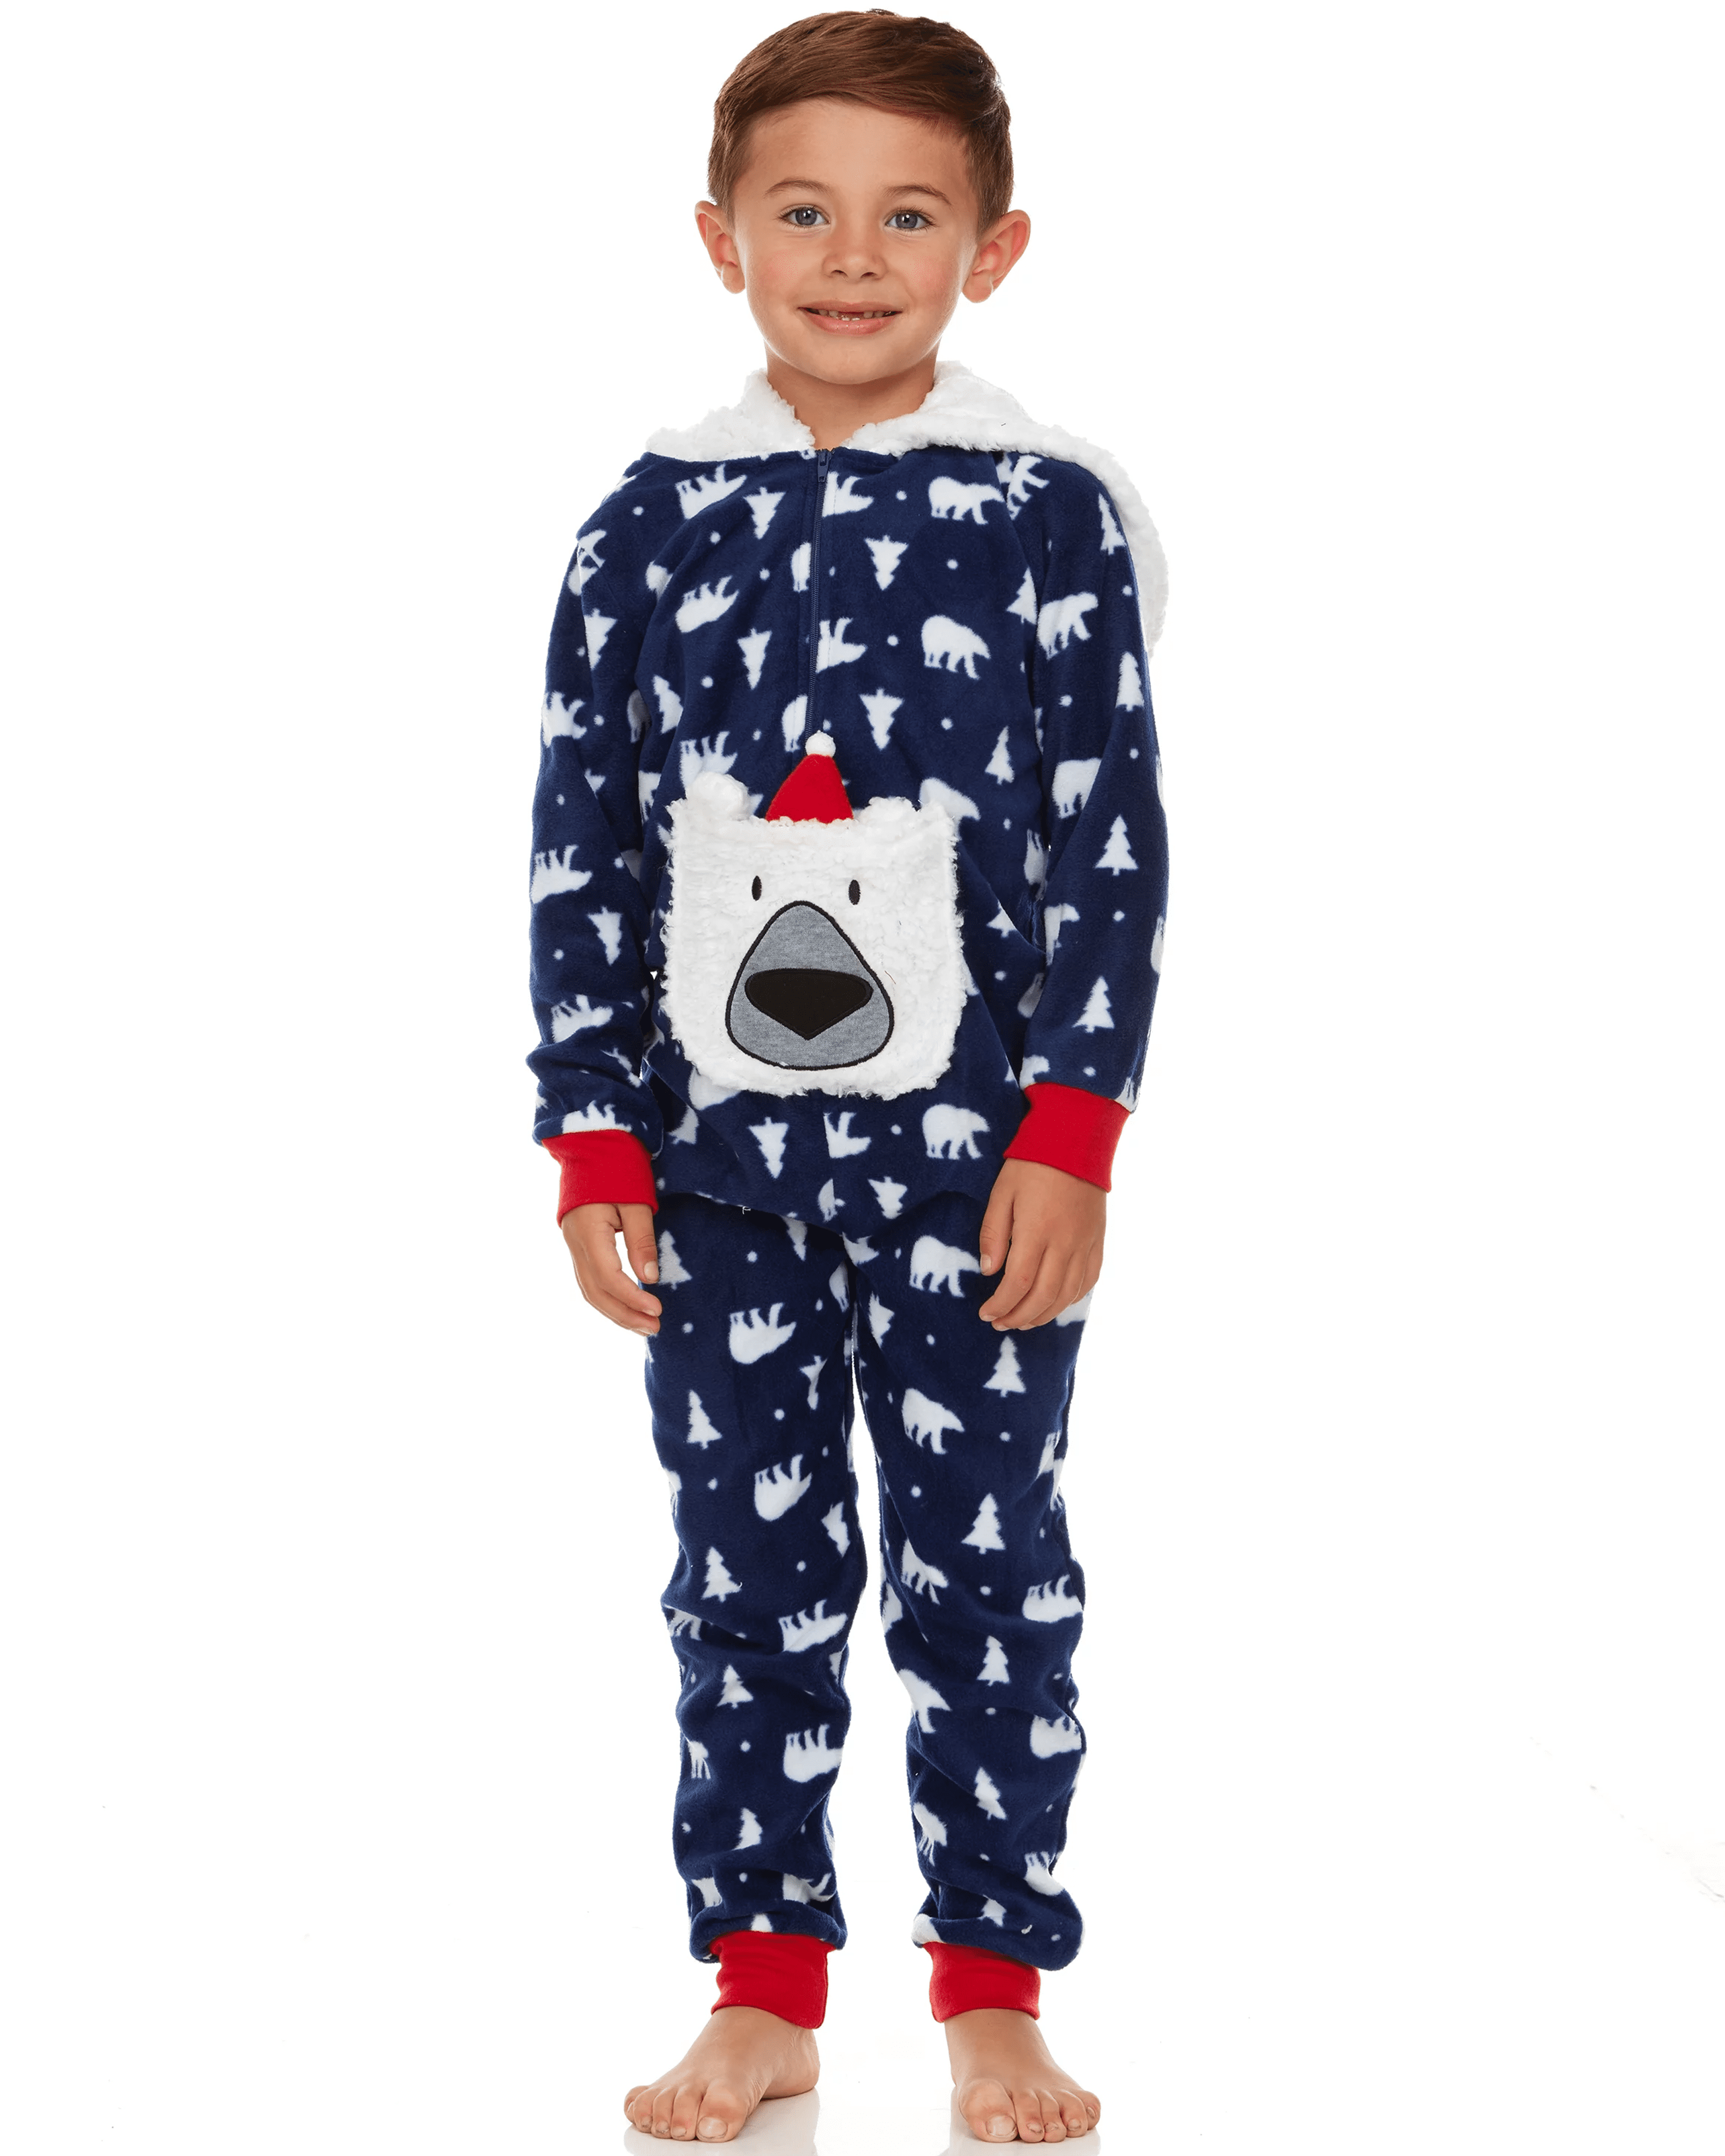 Toddler Boys Sleepware Onesie Hooded Night Pajama with Cartoon Pet